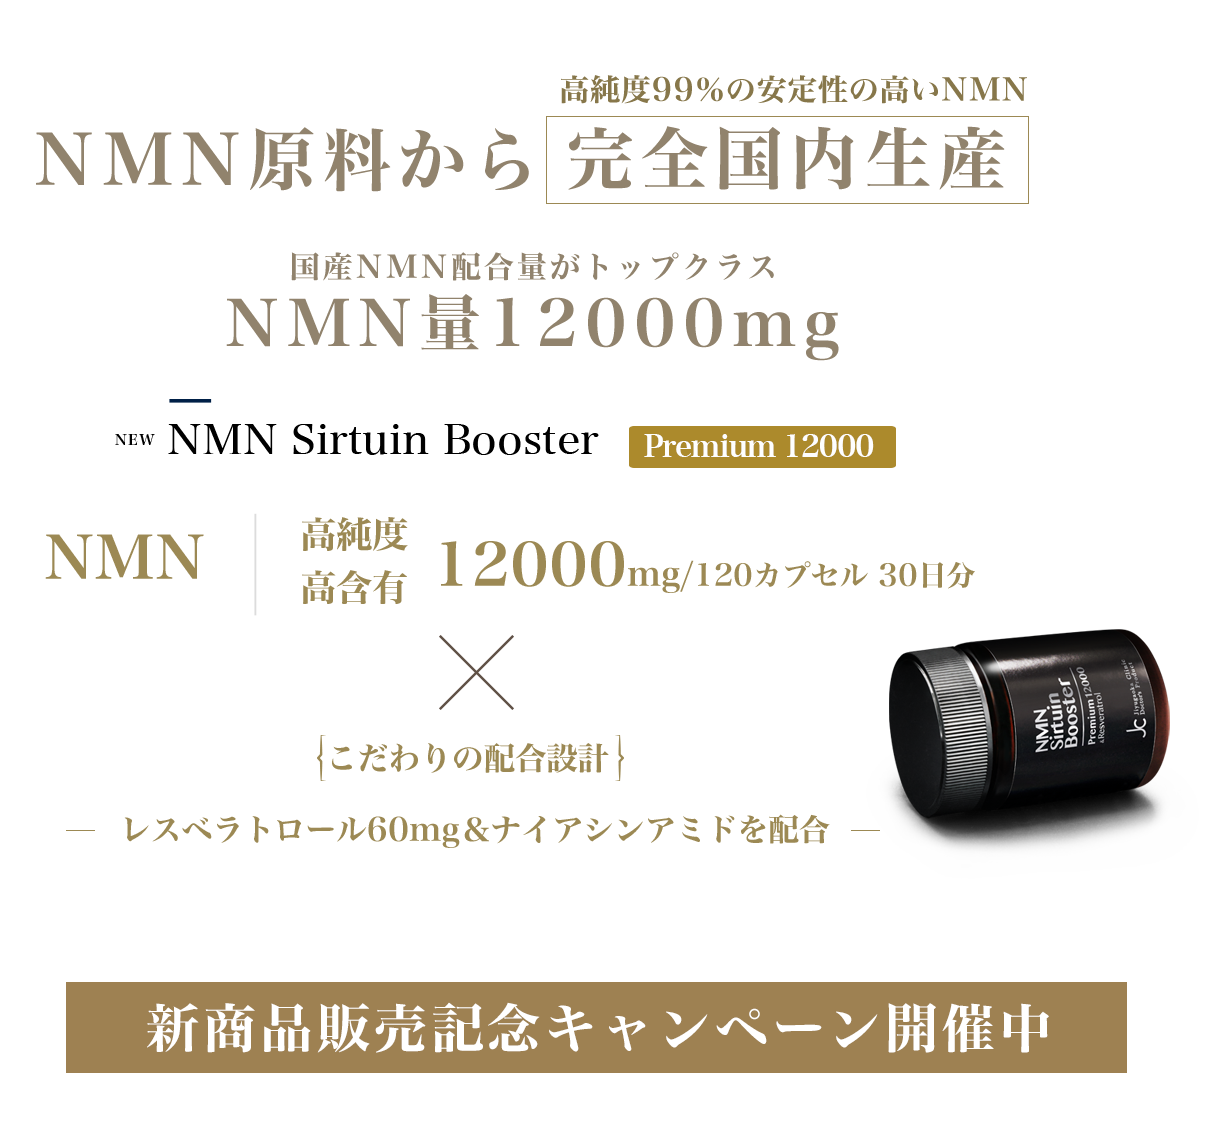 NMNサーチュインブースタープレミアム12000商品